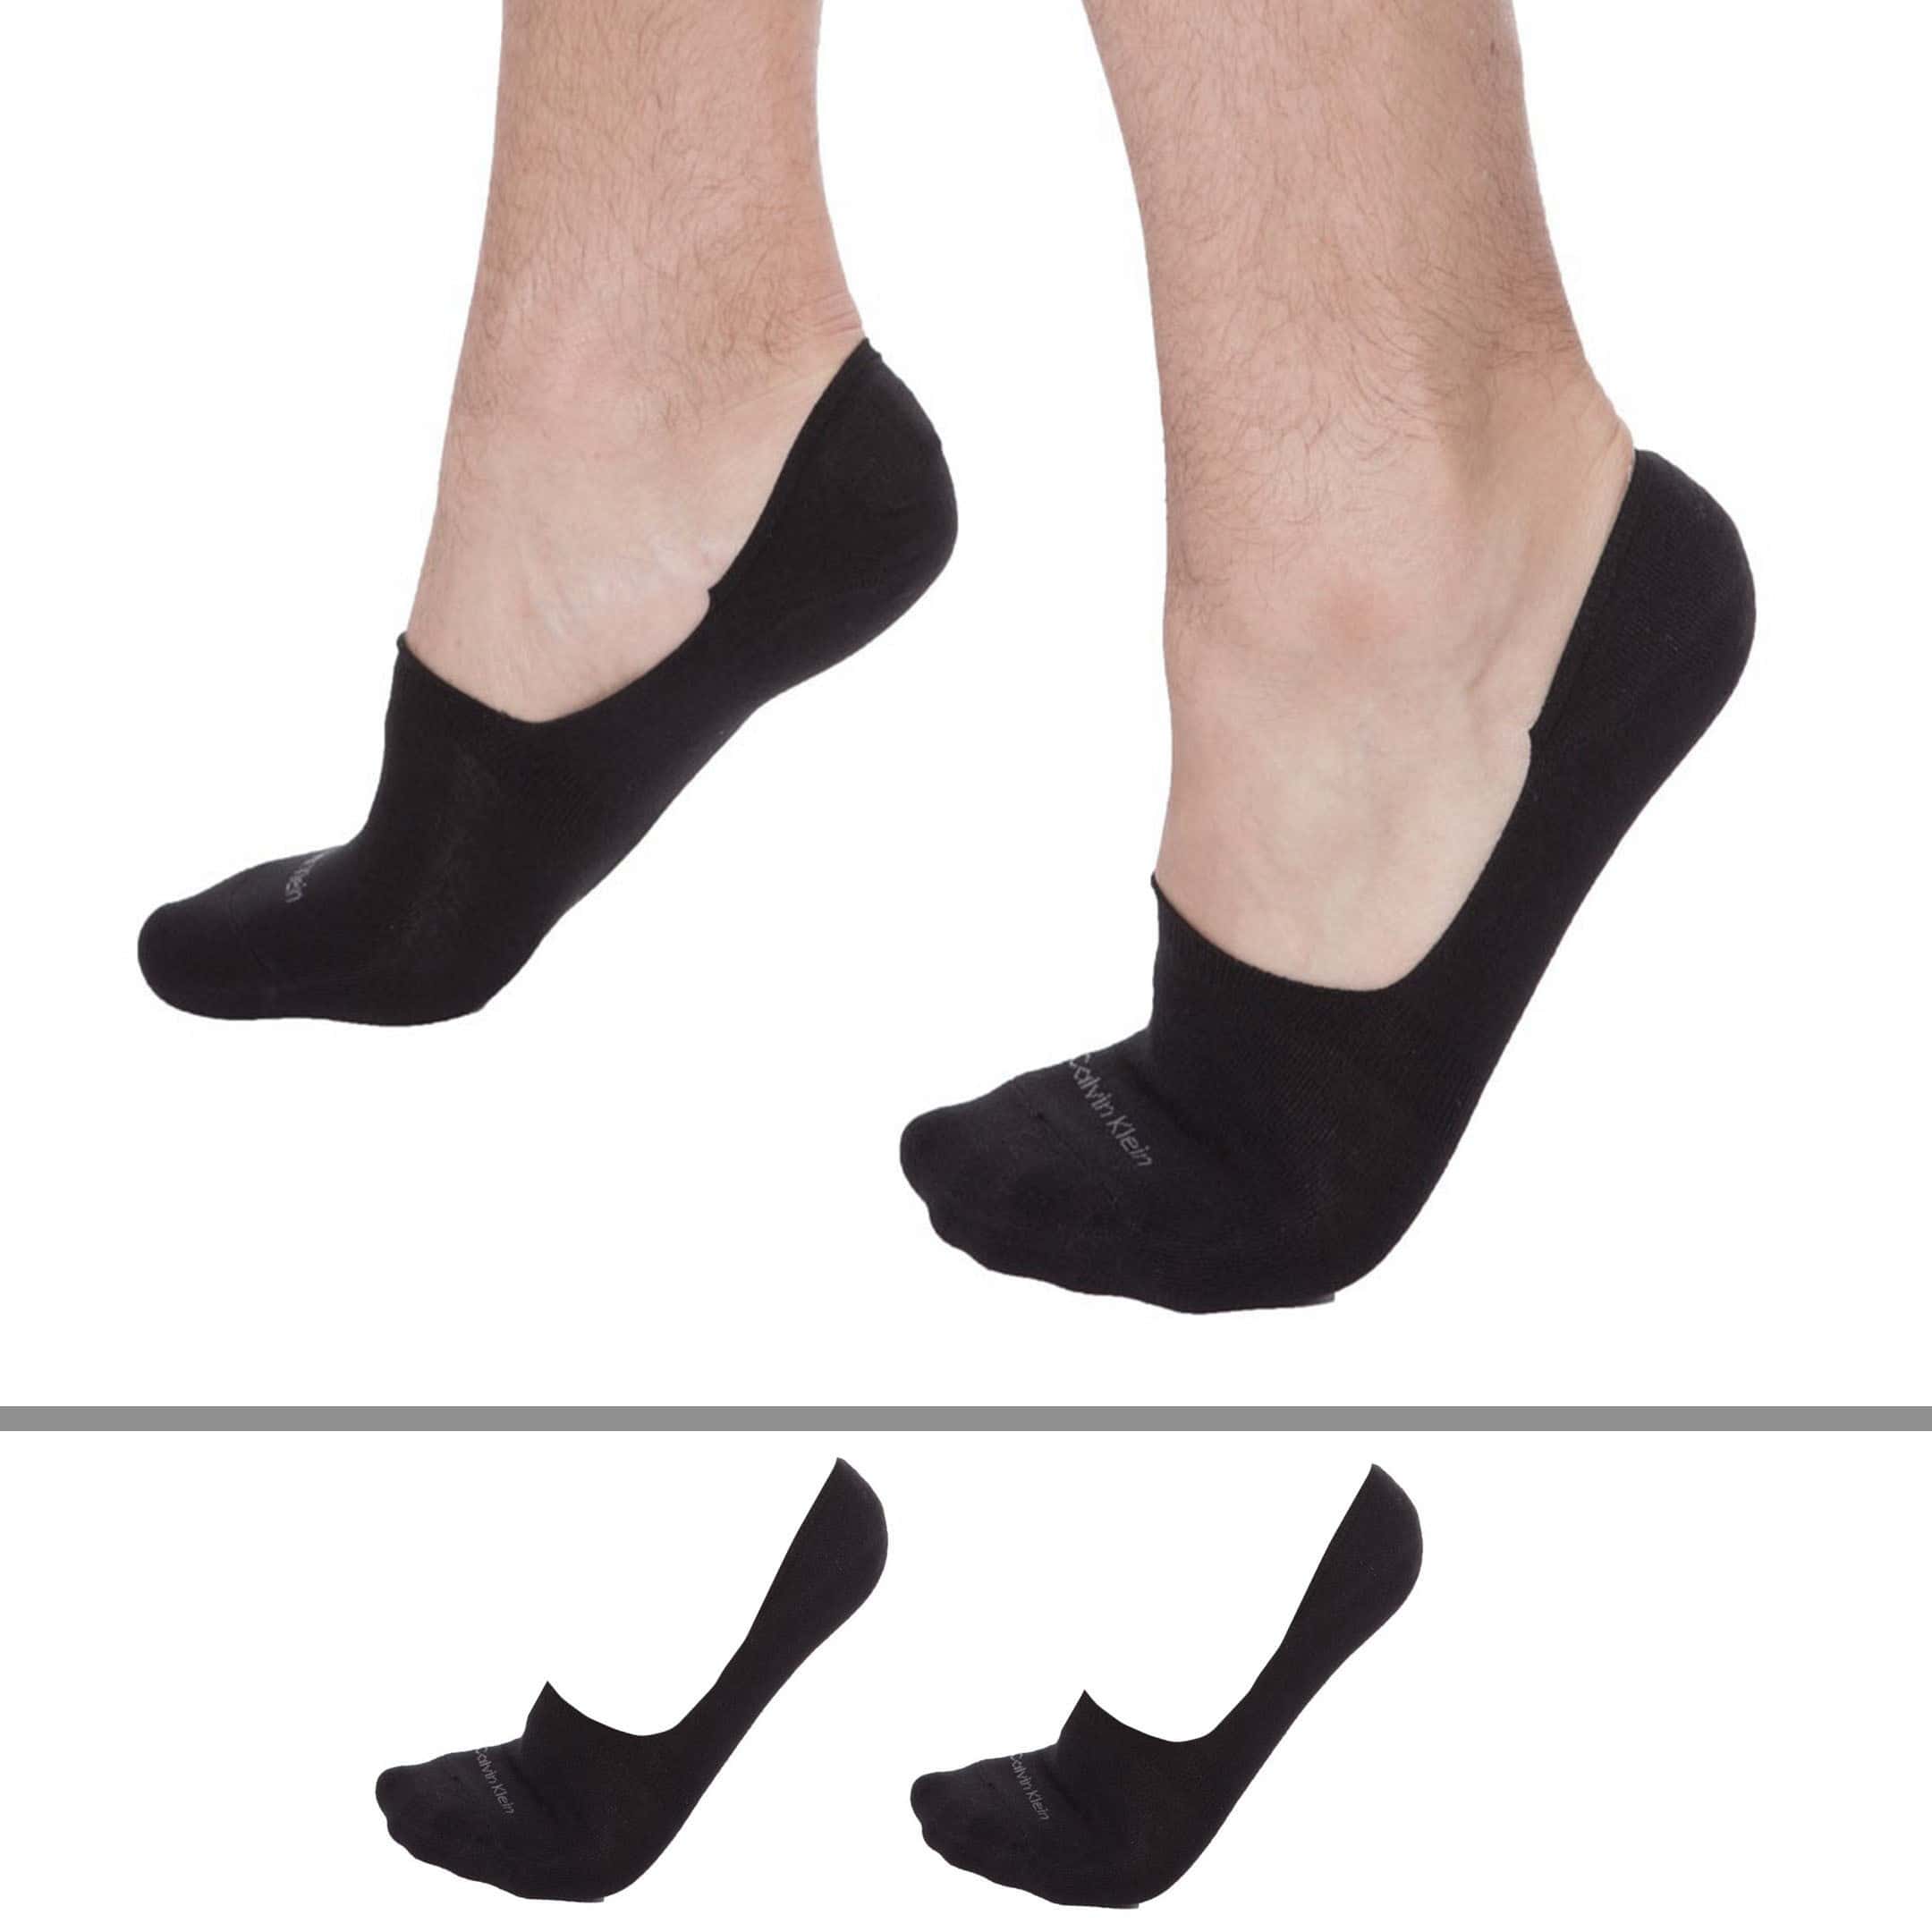 Socquettes invisibles 2 paires - noir